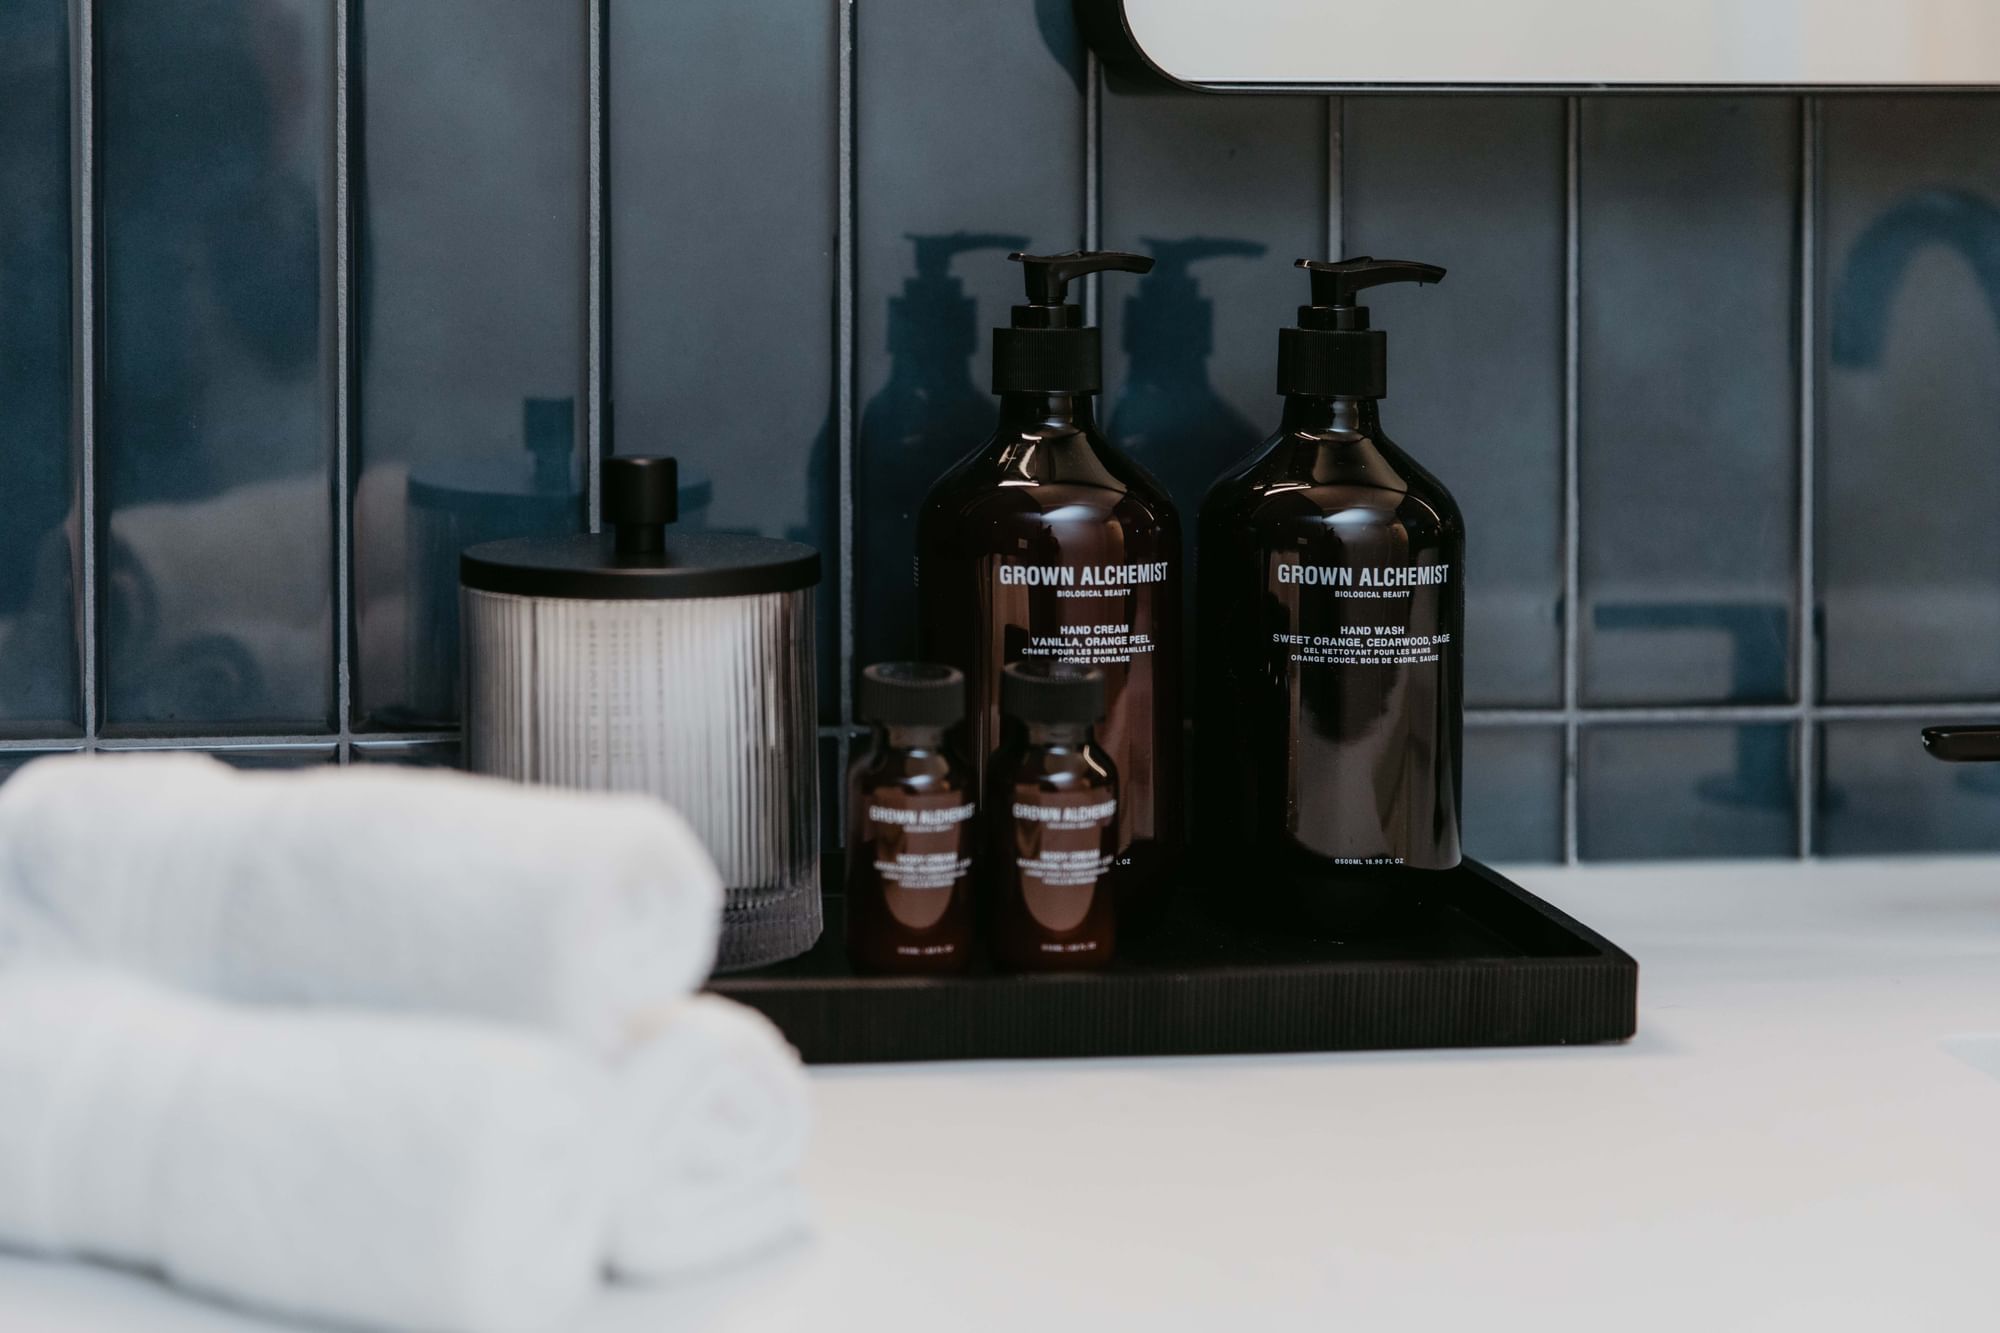 Grown Alchemist bath products in the Poliform Penthouse suite